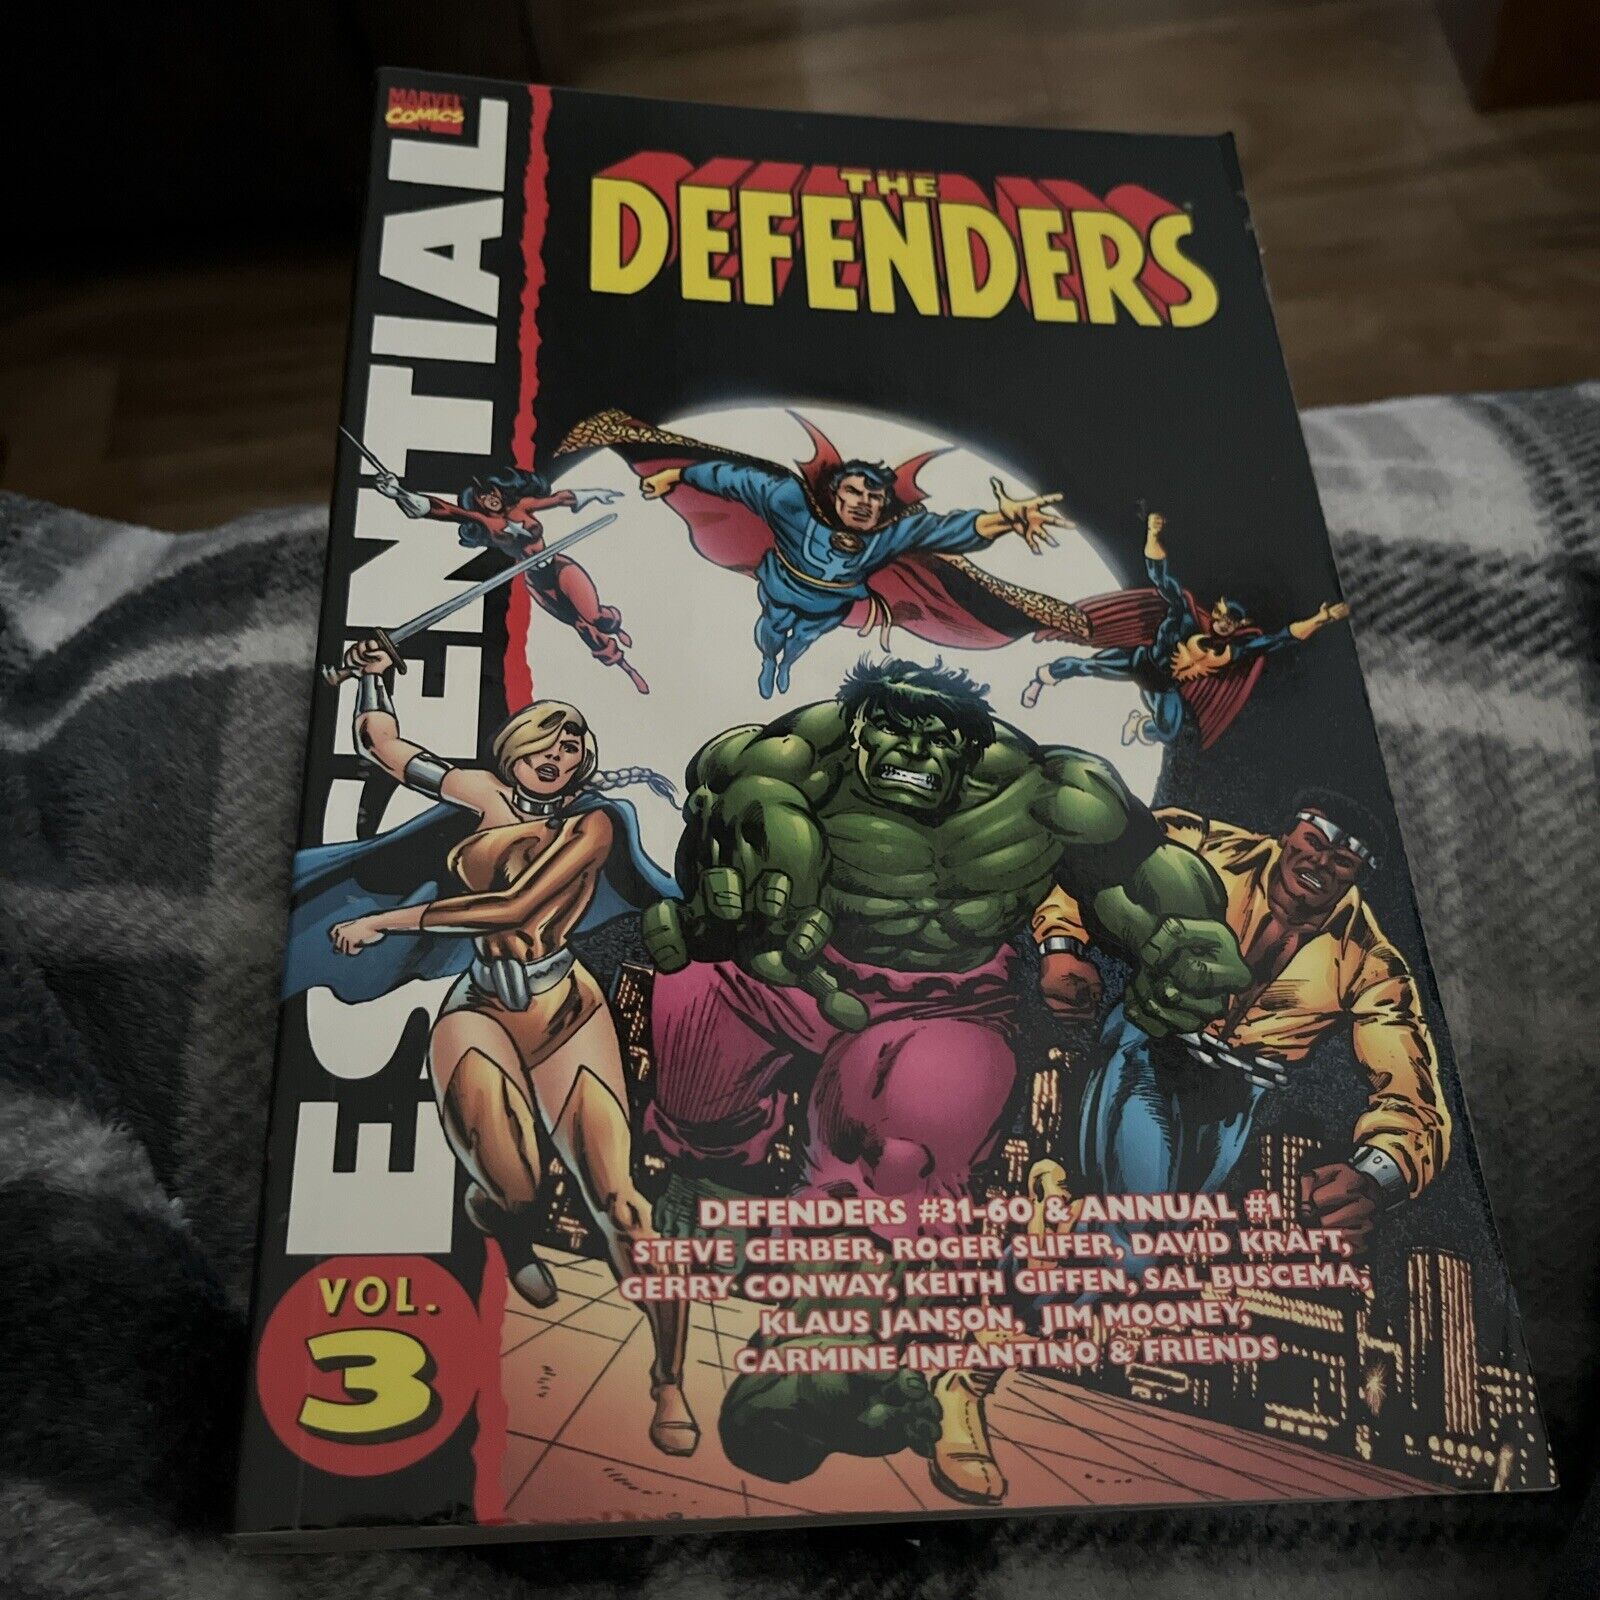 2007 Marvel Comics Essentials The Defenders Volume 3 #31-60 Annual #1